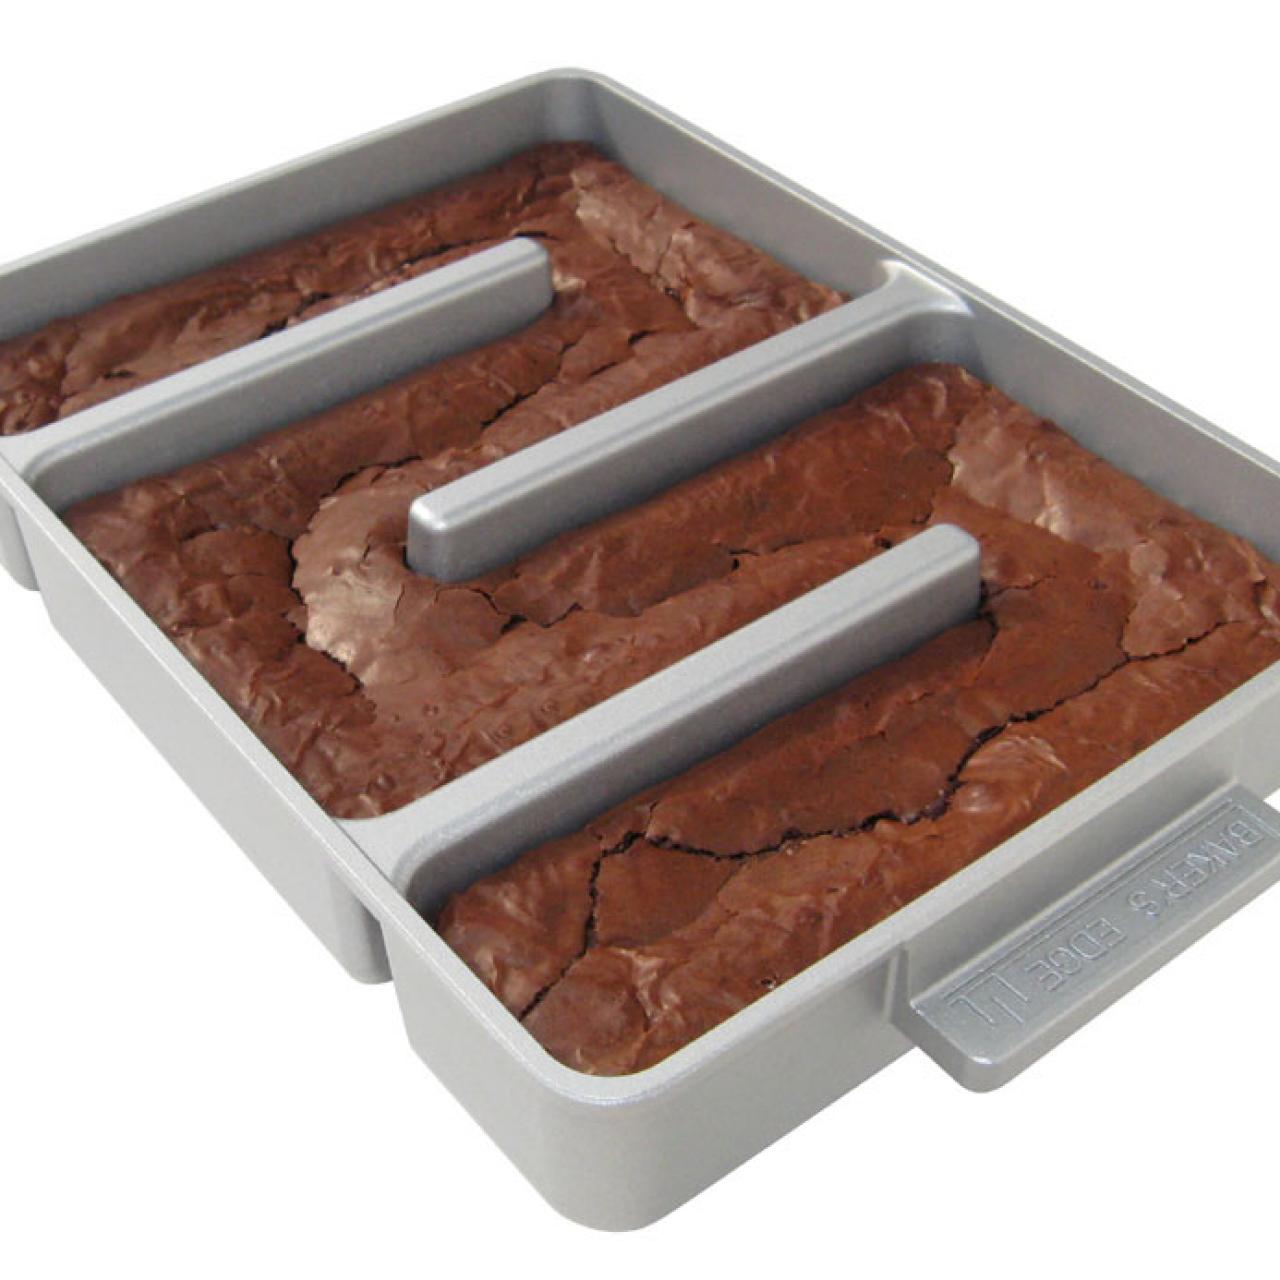 Brownie Baking Pan Dividers, Best Brownie Pan Dividers